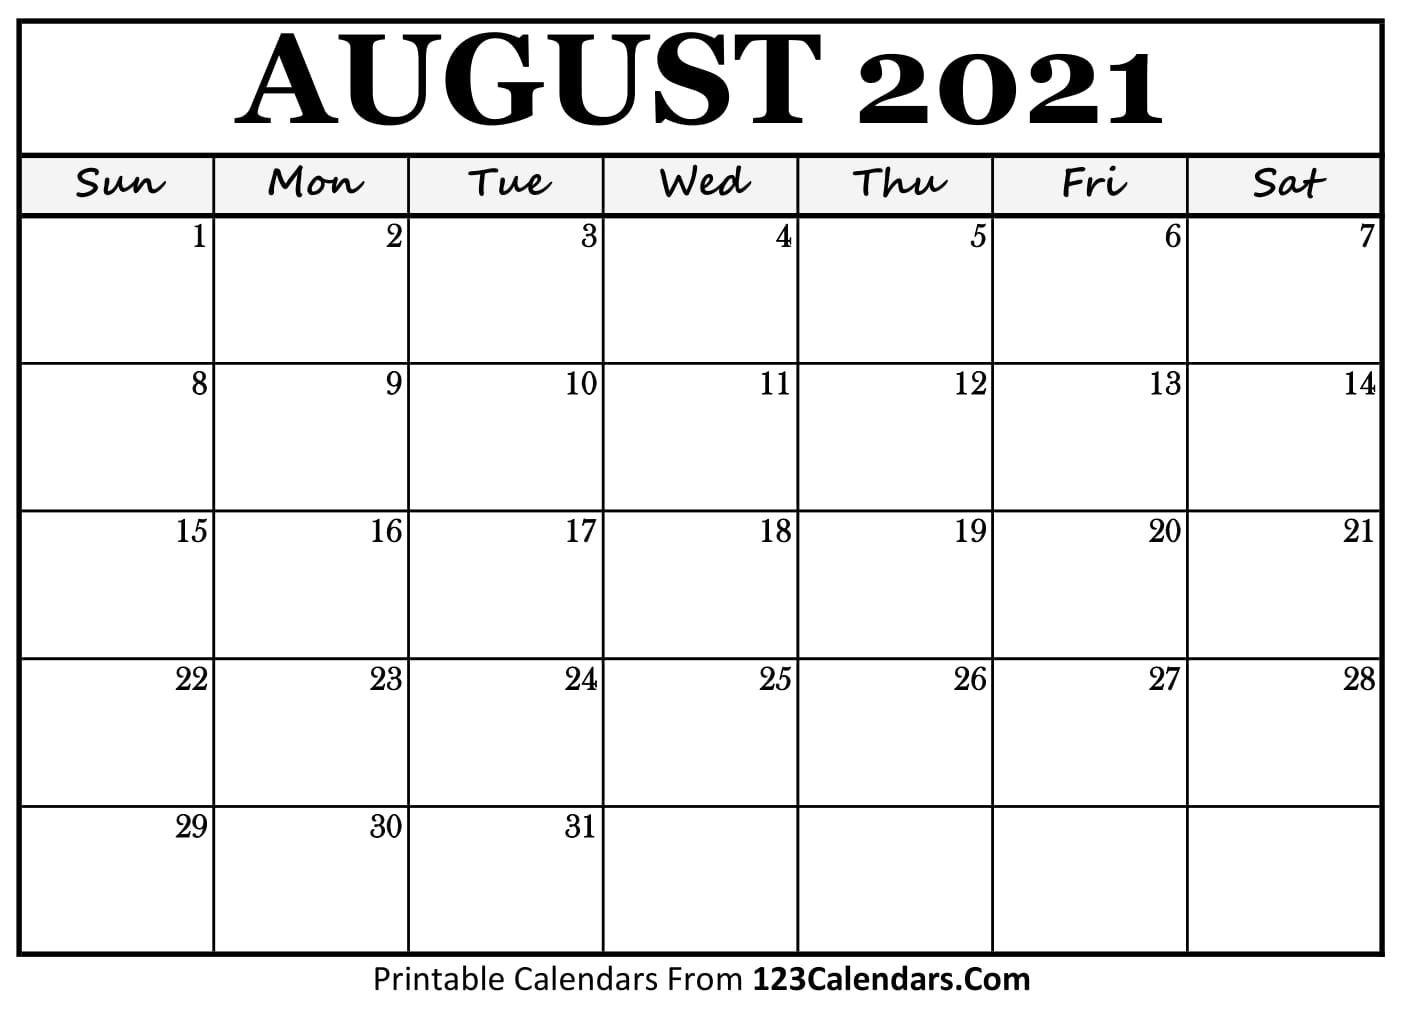 Printable August 2021 Calendar Templates | 123Calendars.com